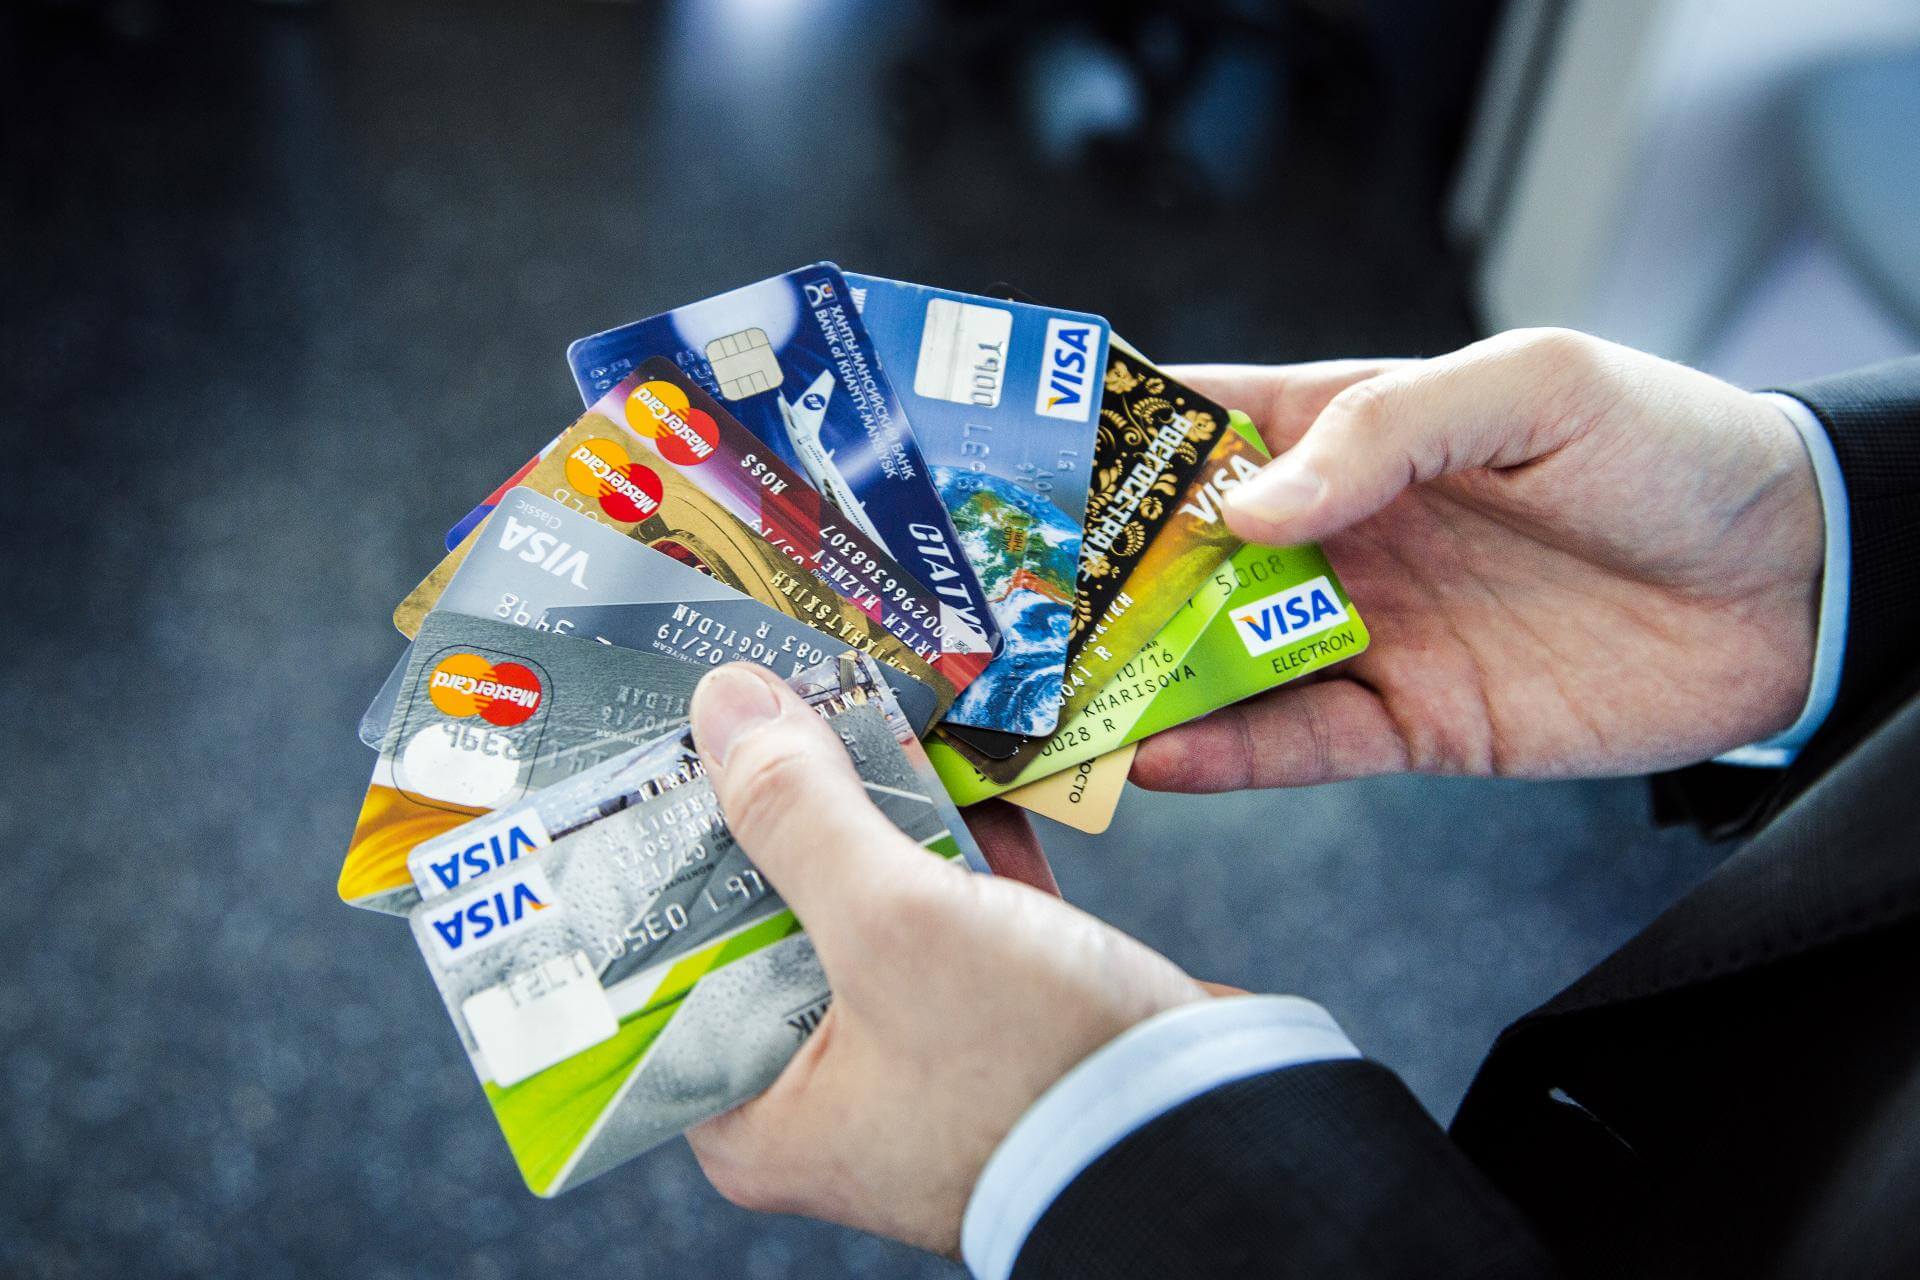 Пластиковые карты могут уйти в прошлое: офлайн-магазины отказываются принимать оплату кредитками